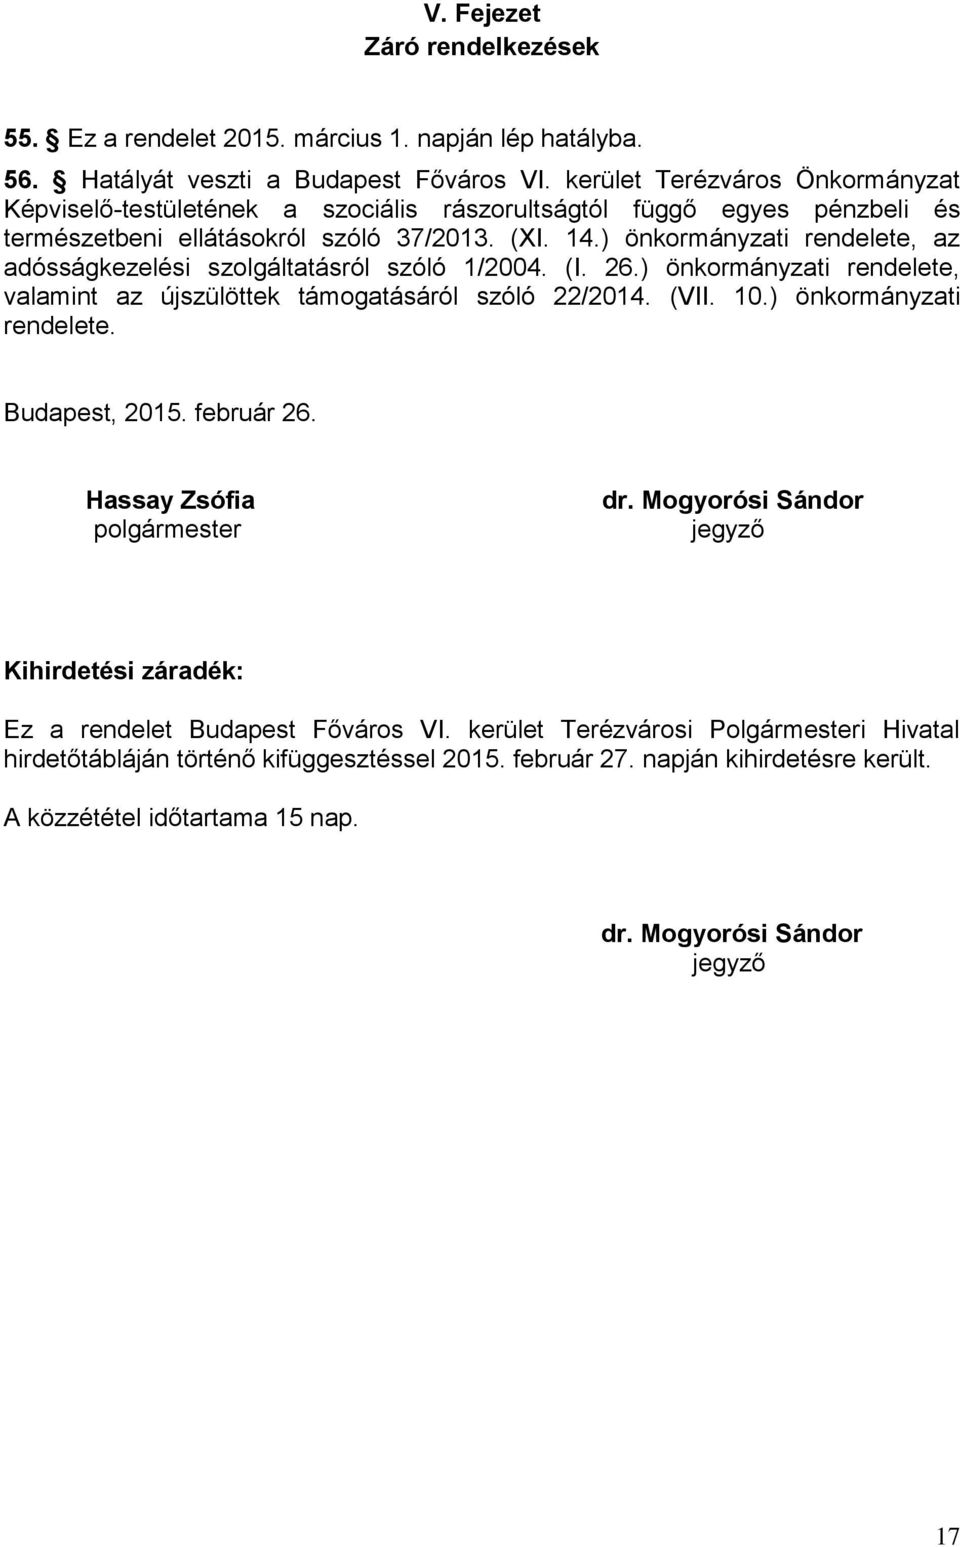 ) önkormányzati rendelete, az adósságkezelési szolgáltatásról szóló 1/2004. (I. 26.) önkormányzati rendelete, valamint az újszülöttek támogatásáról szóló 22/2014. (VII. 10.) önkormányzati rendelete. Budapest, 2015.